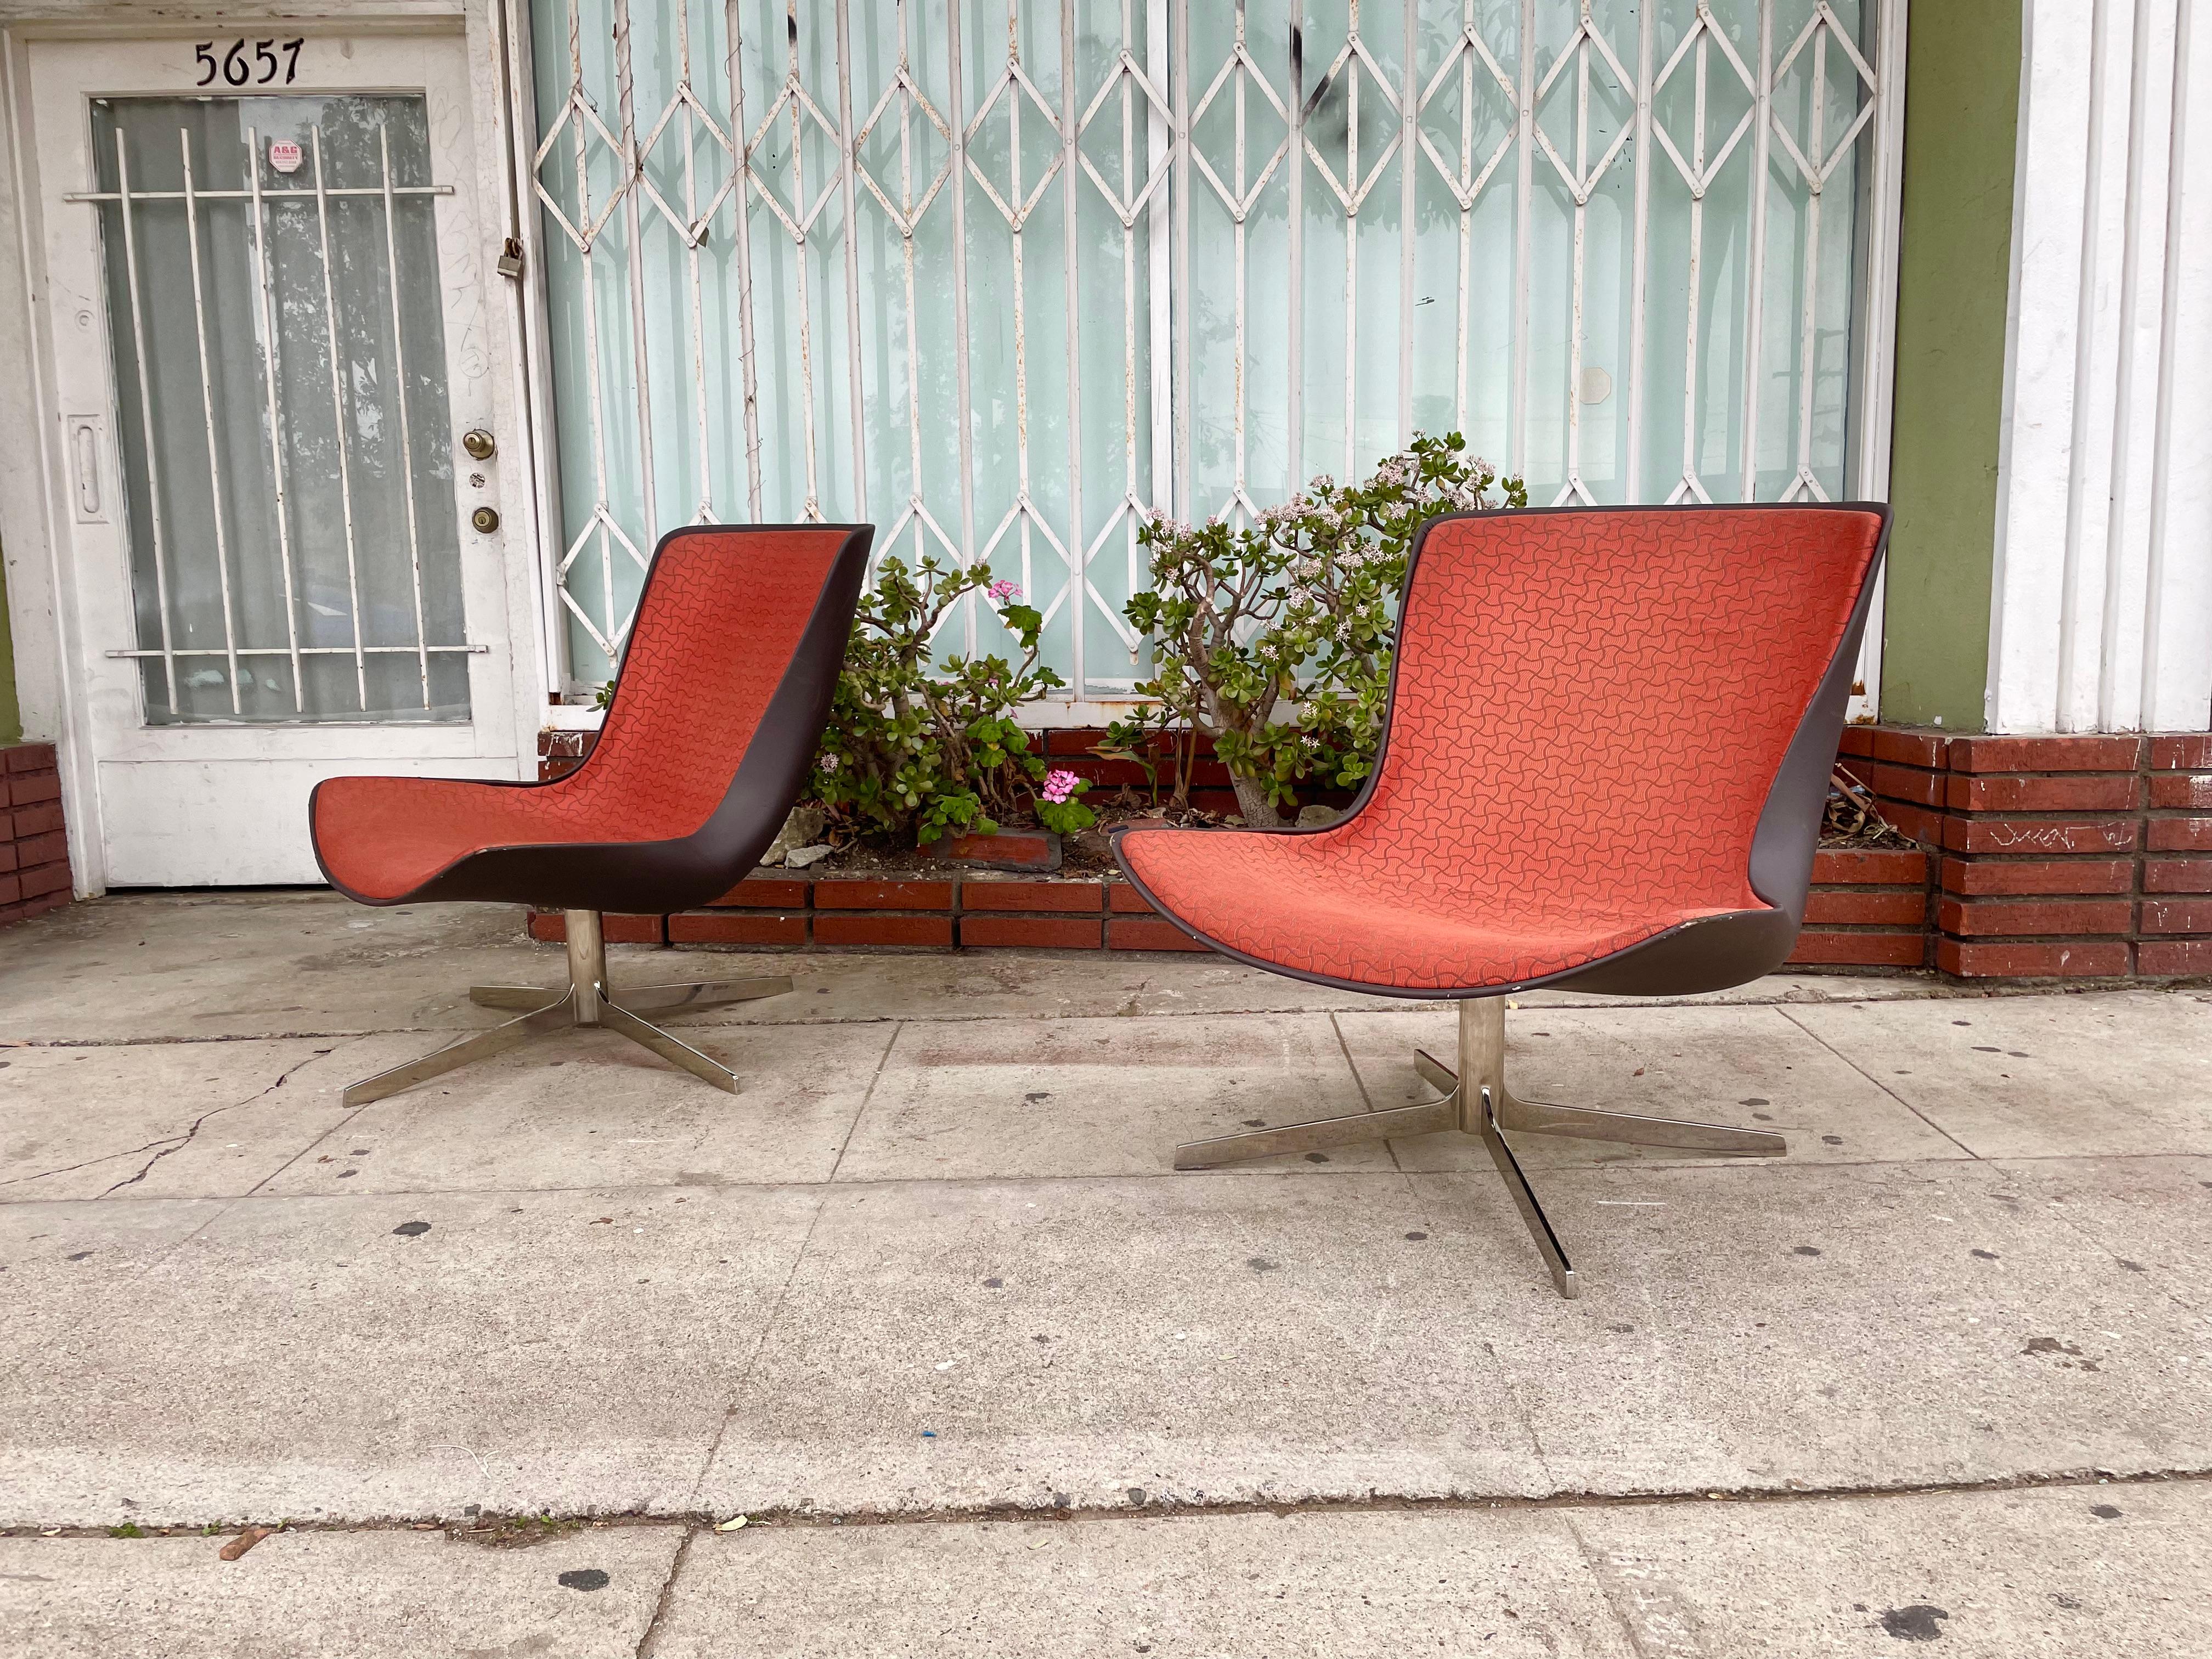 Das fantastische Paar Vika Lounge Sessel von Bernhardt Design hat ein solides, drehbares Chromgestell, das ihm einen sehr coolen Look verleiht. Außerdem verfügt er über eine komfortable Schaumstoffpolsterung. 